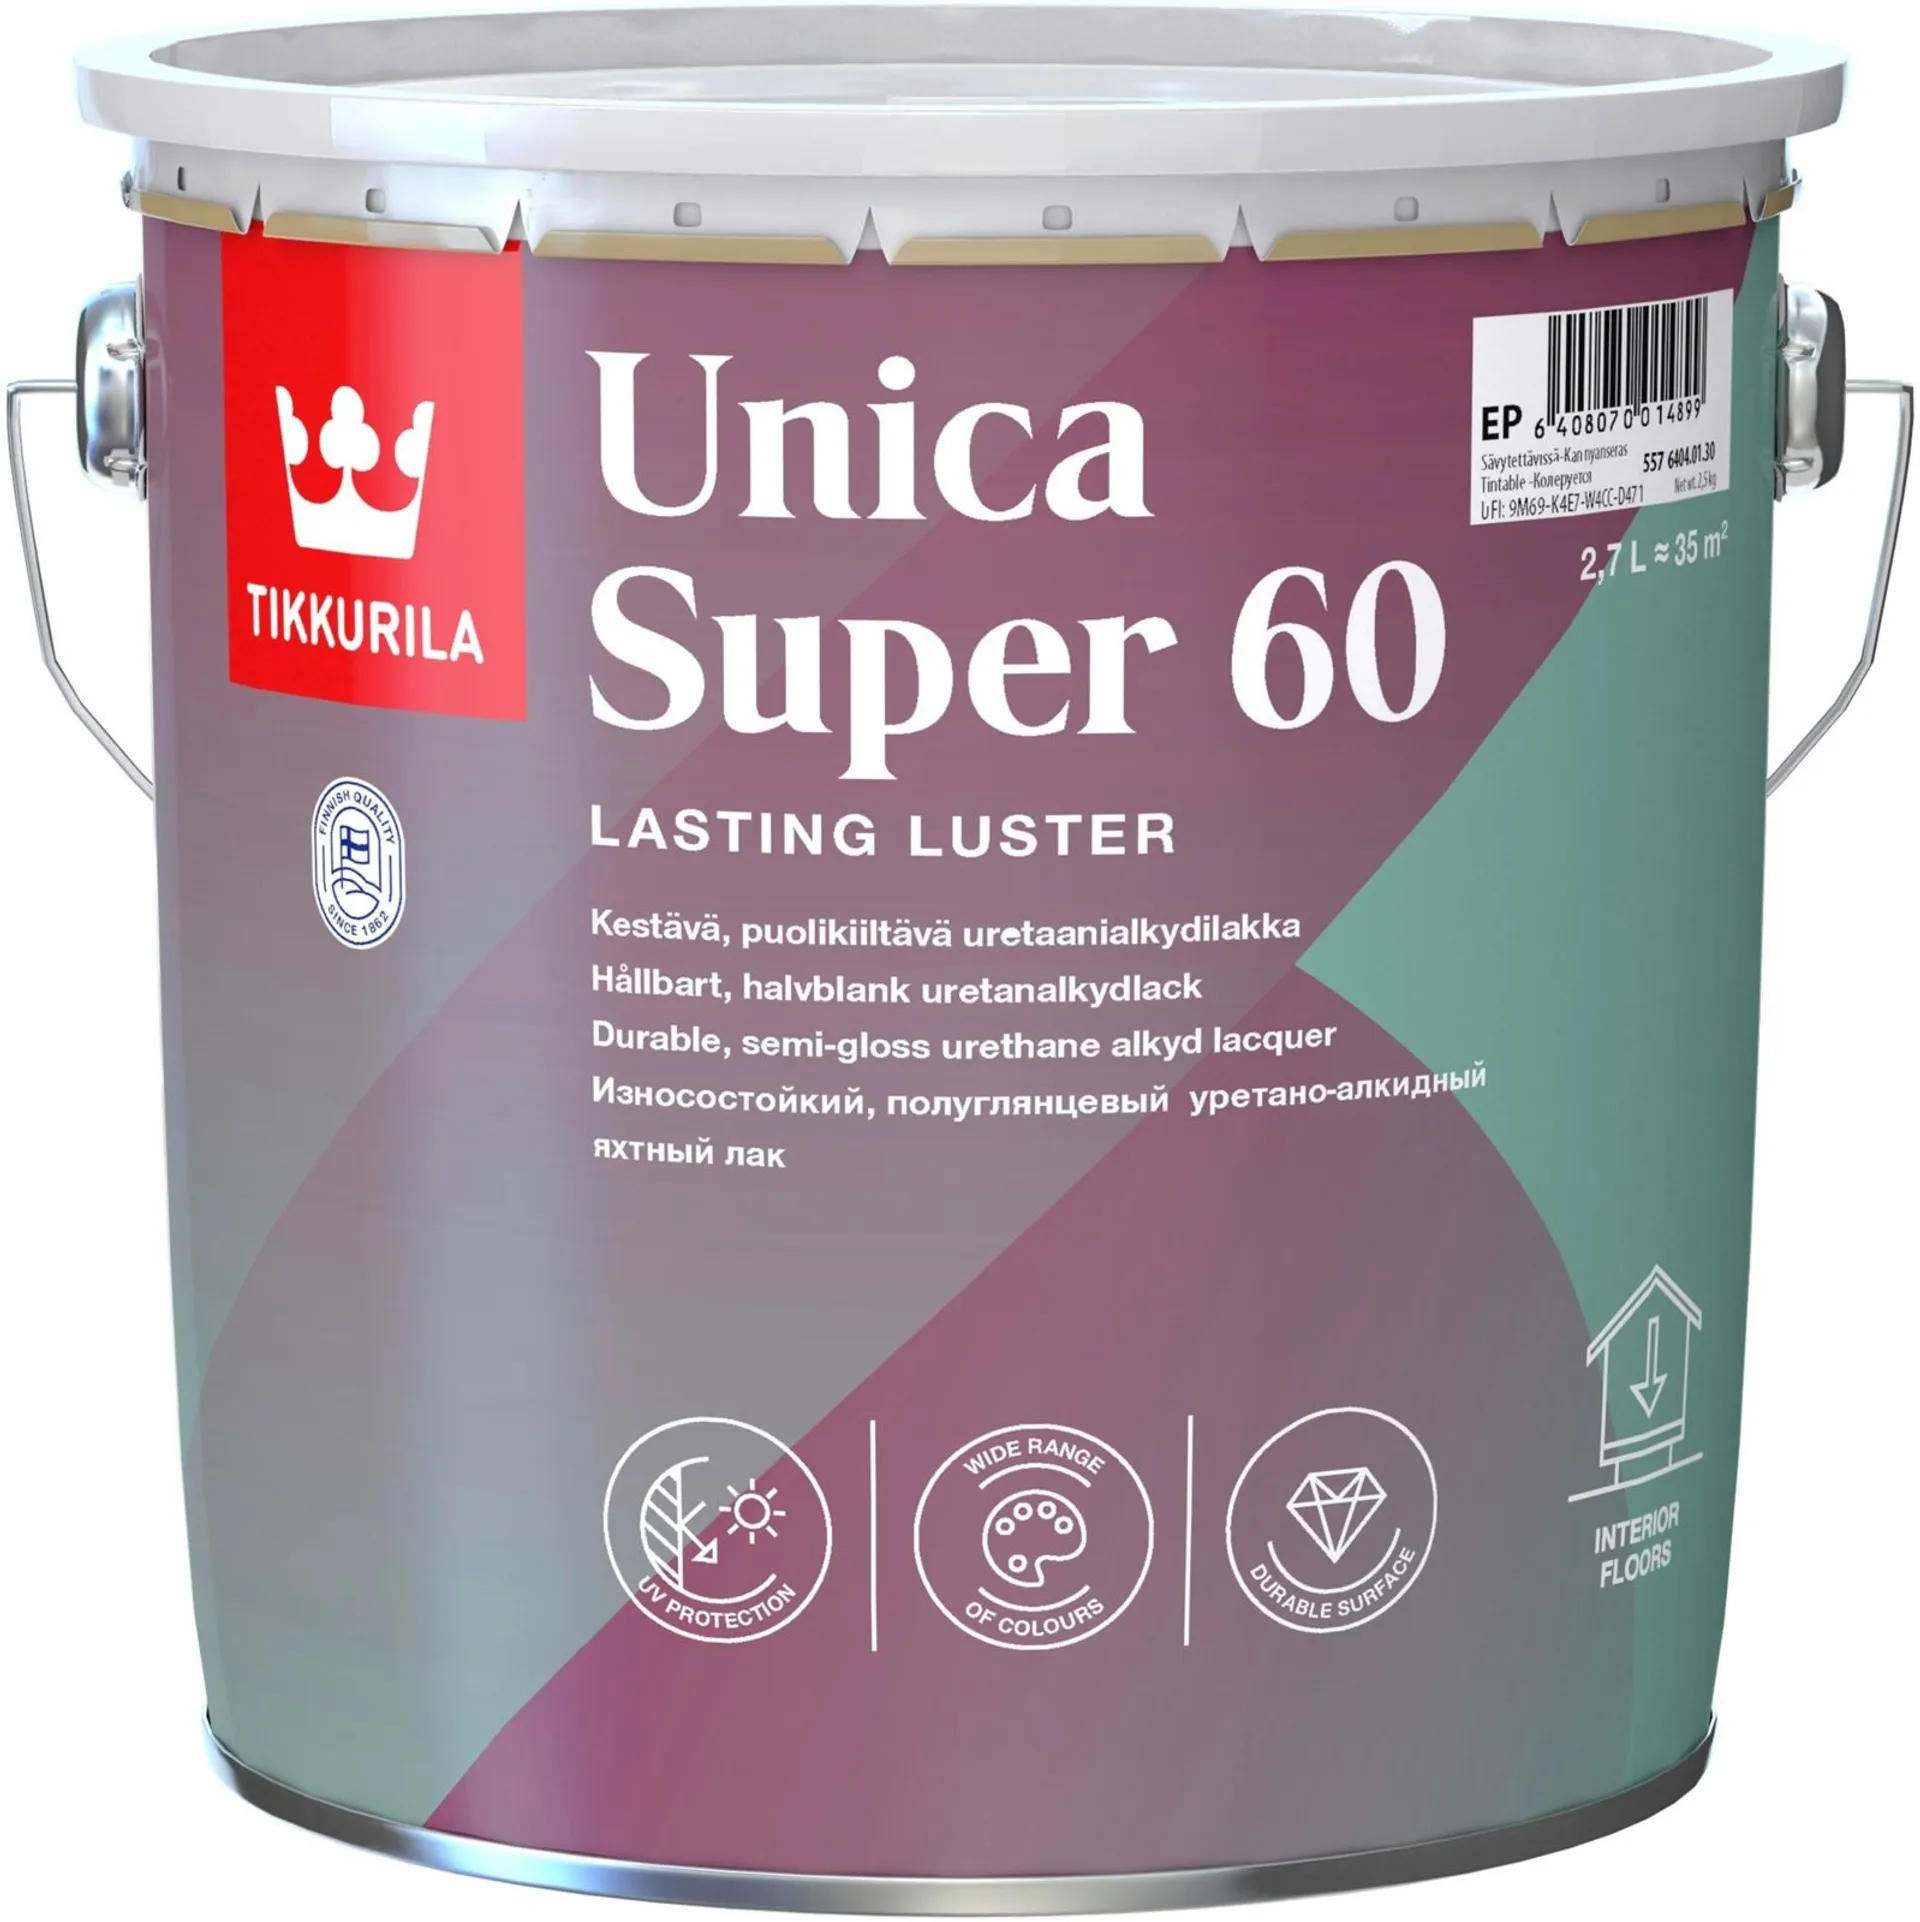 Tikkurila Unica Super 60 uretaanialkydilakka 2,7l sävytettävissä puolikiiltävä